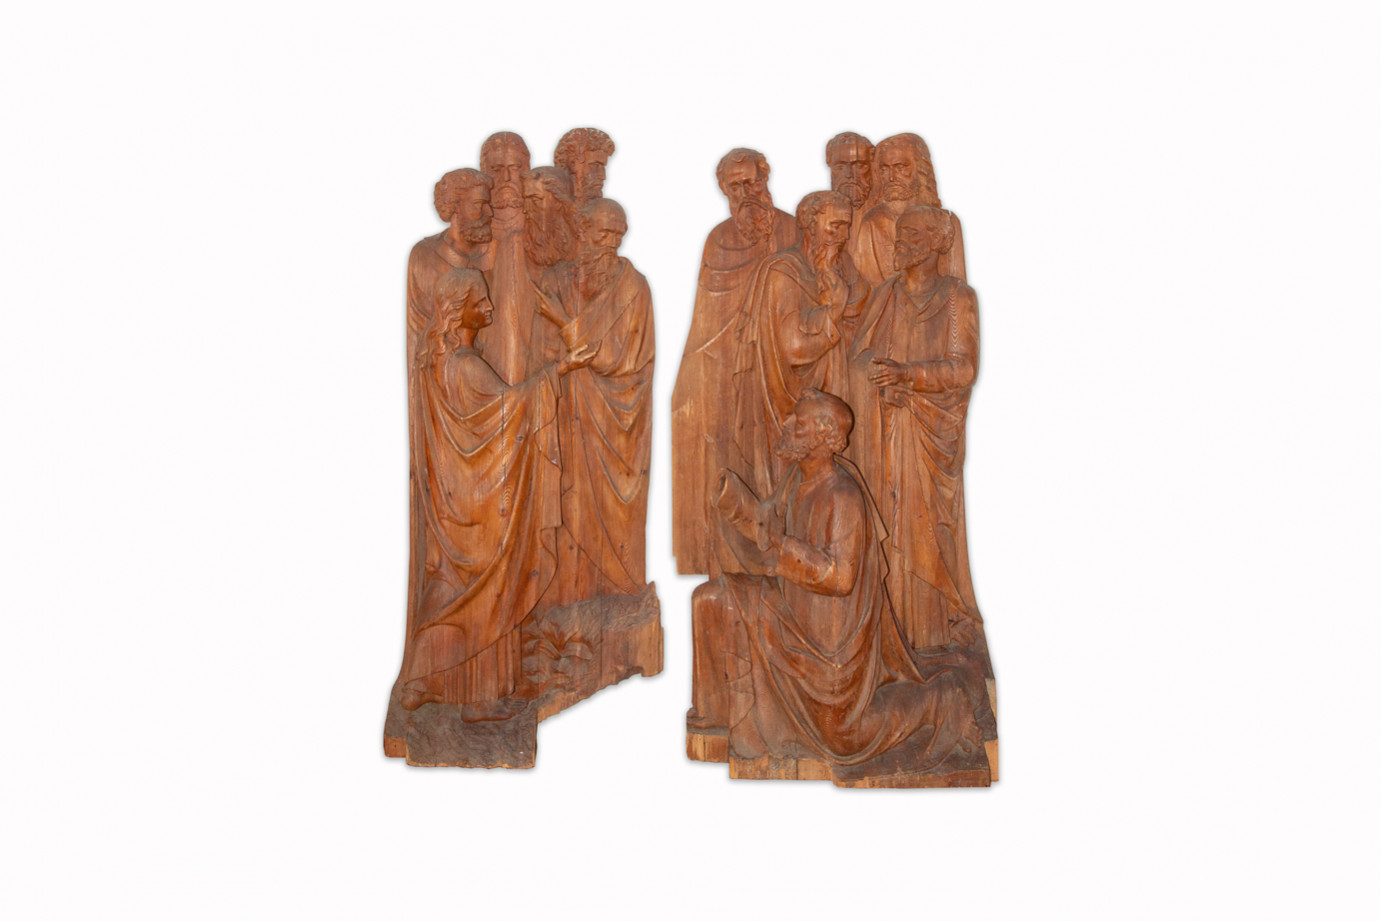 Exceptionnel groupe sculpté du Quattrocento - Italie du nord première moitié du XVe siècle